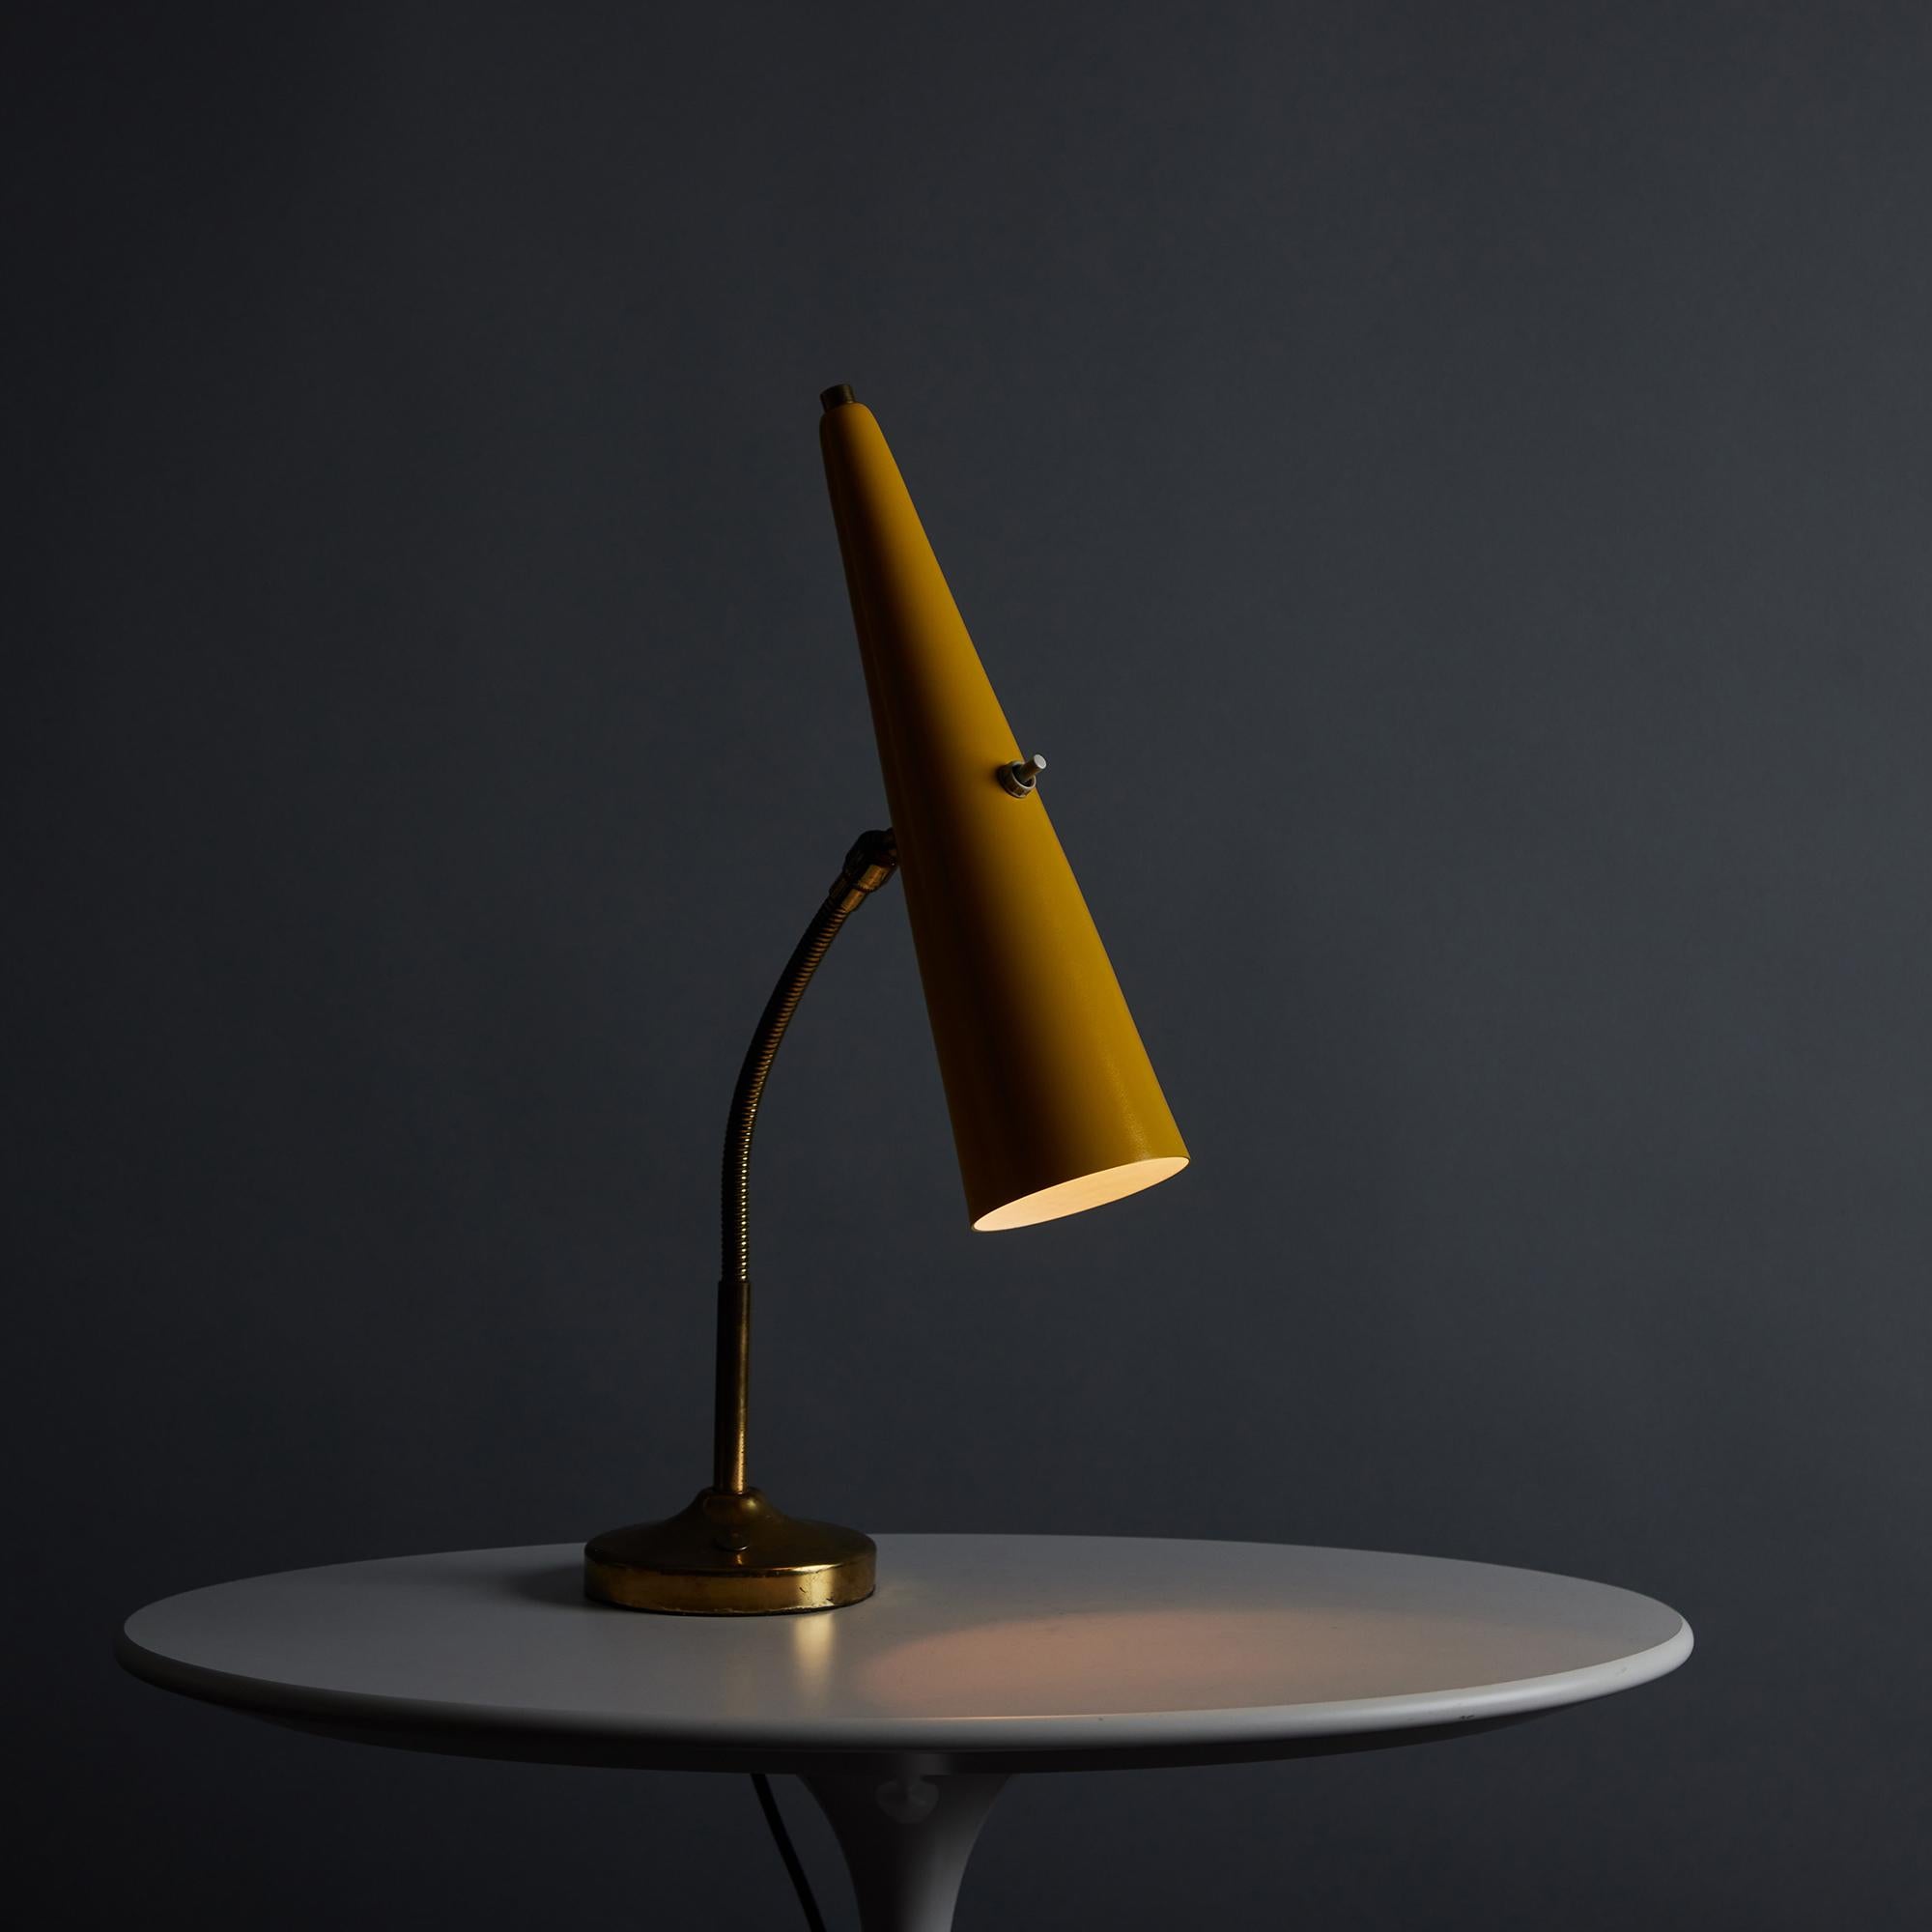 Lampe de table Stilux en métal jaune et laiton, de forme conique, datant des années 1960. Cette lampe de table italienne du milieu du siècle est composée d'un long abat-jour conique en métal peint en jaune, monté sur un bras en col de cygne en